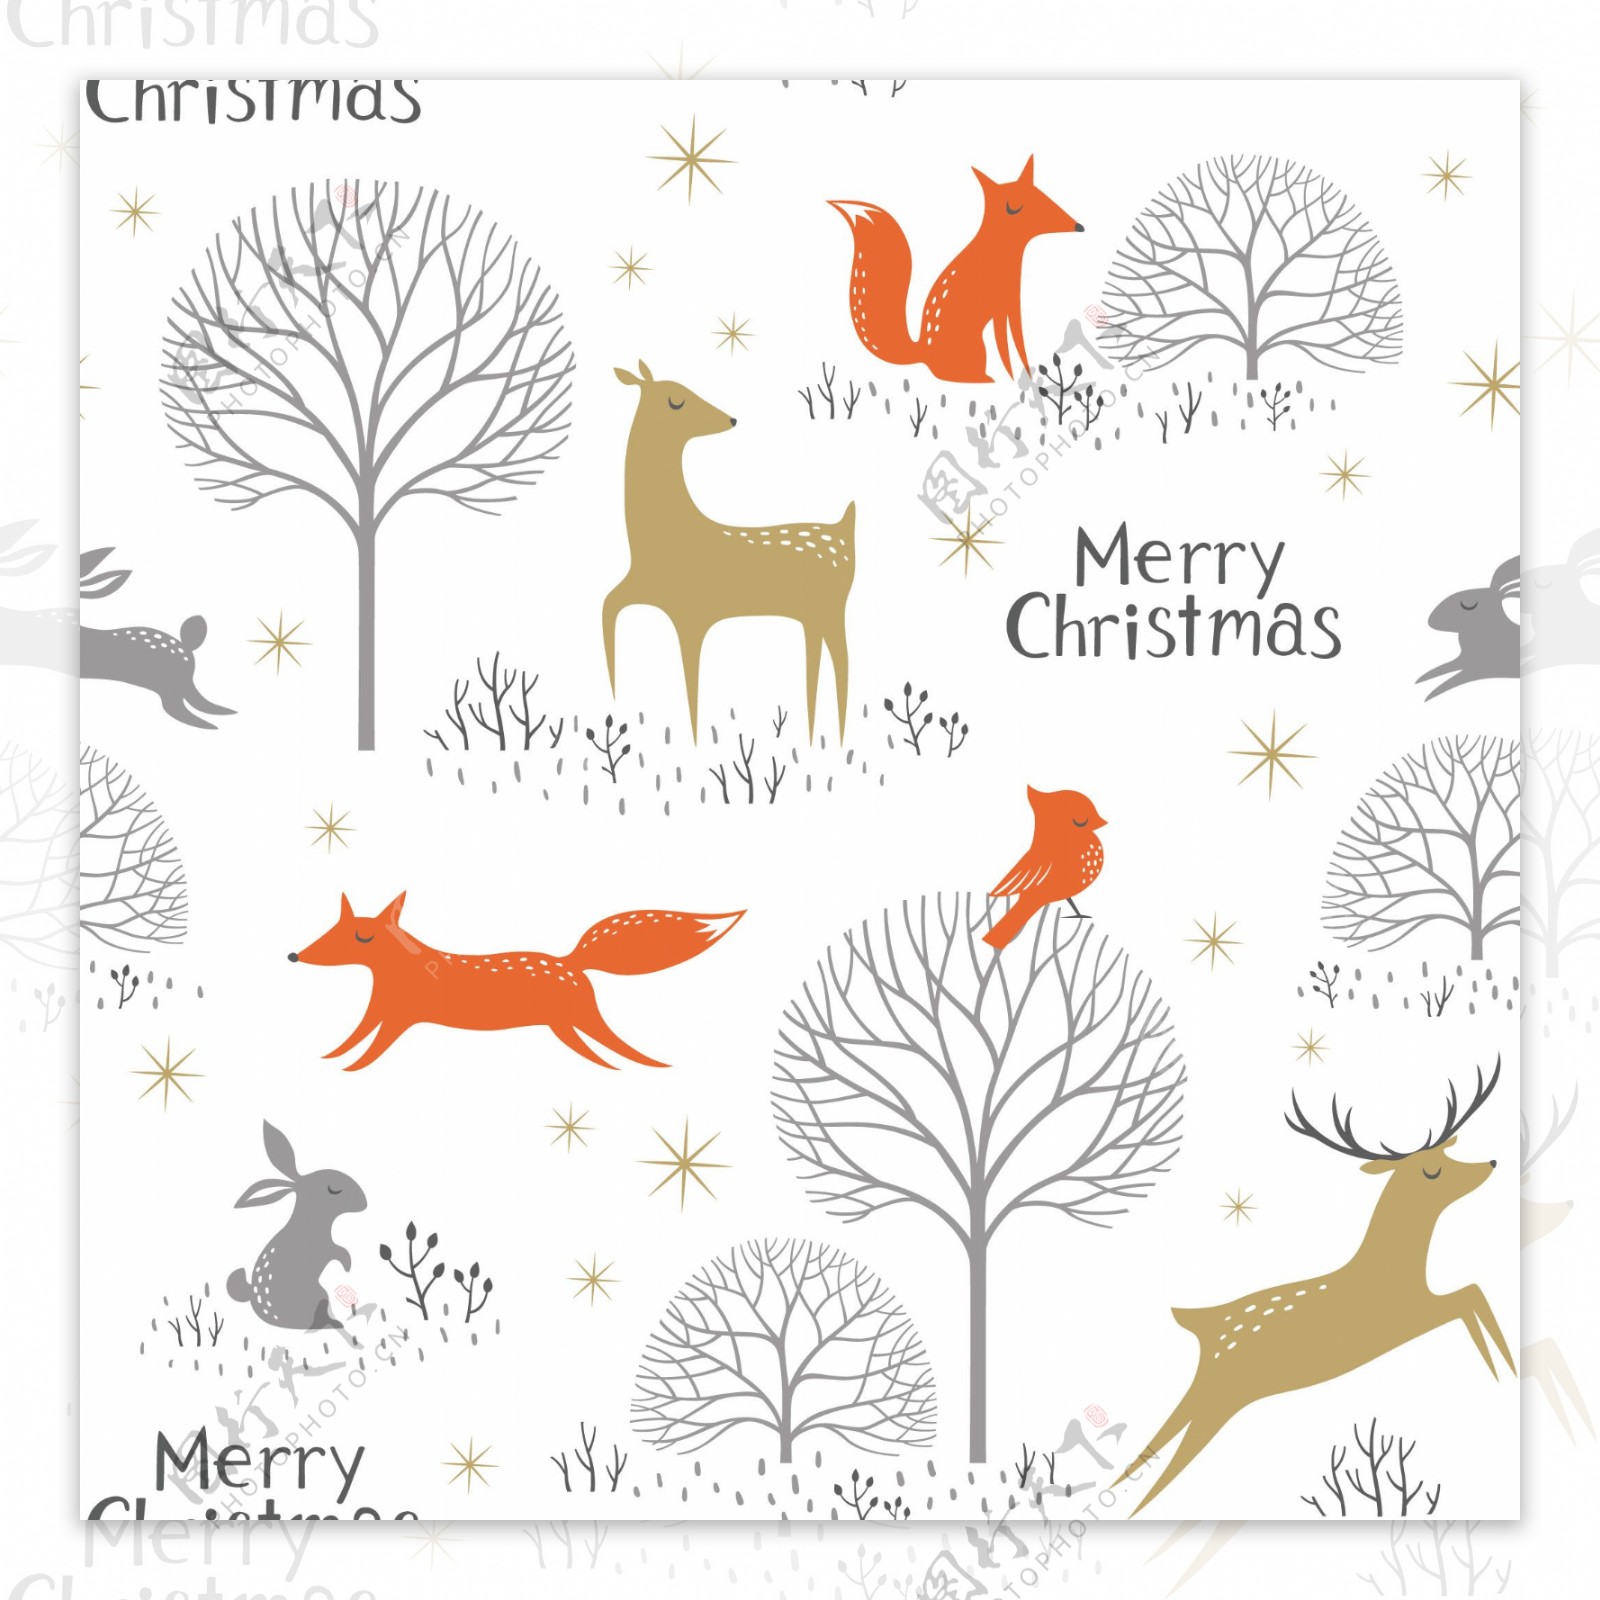 圣诞元素清新壁纸小鹿图案装饰设计